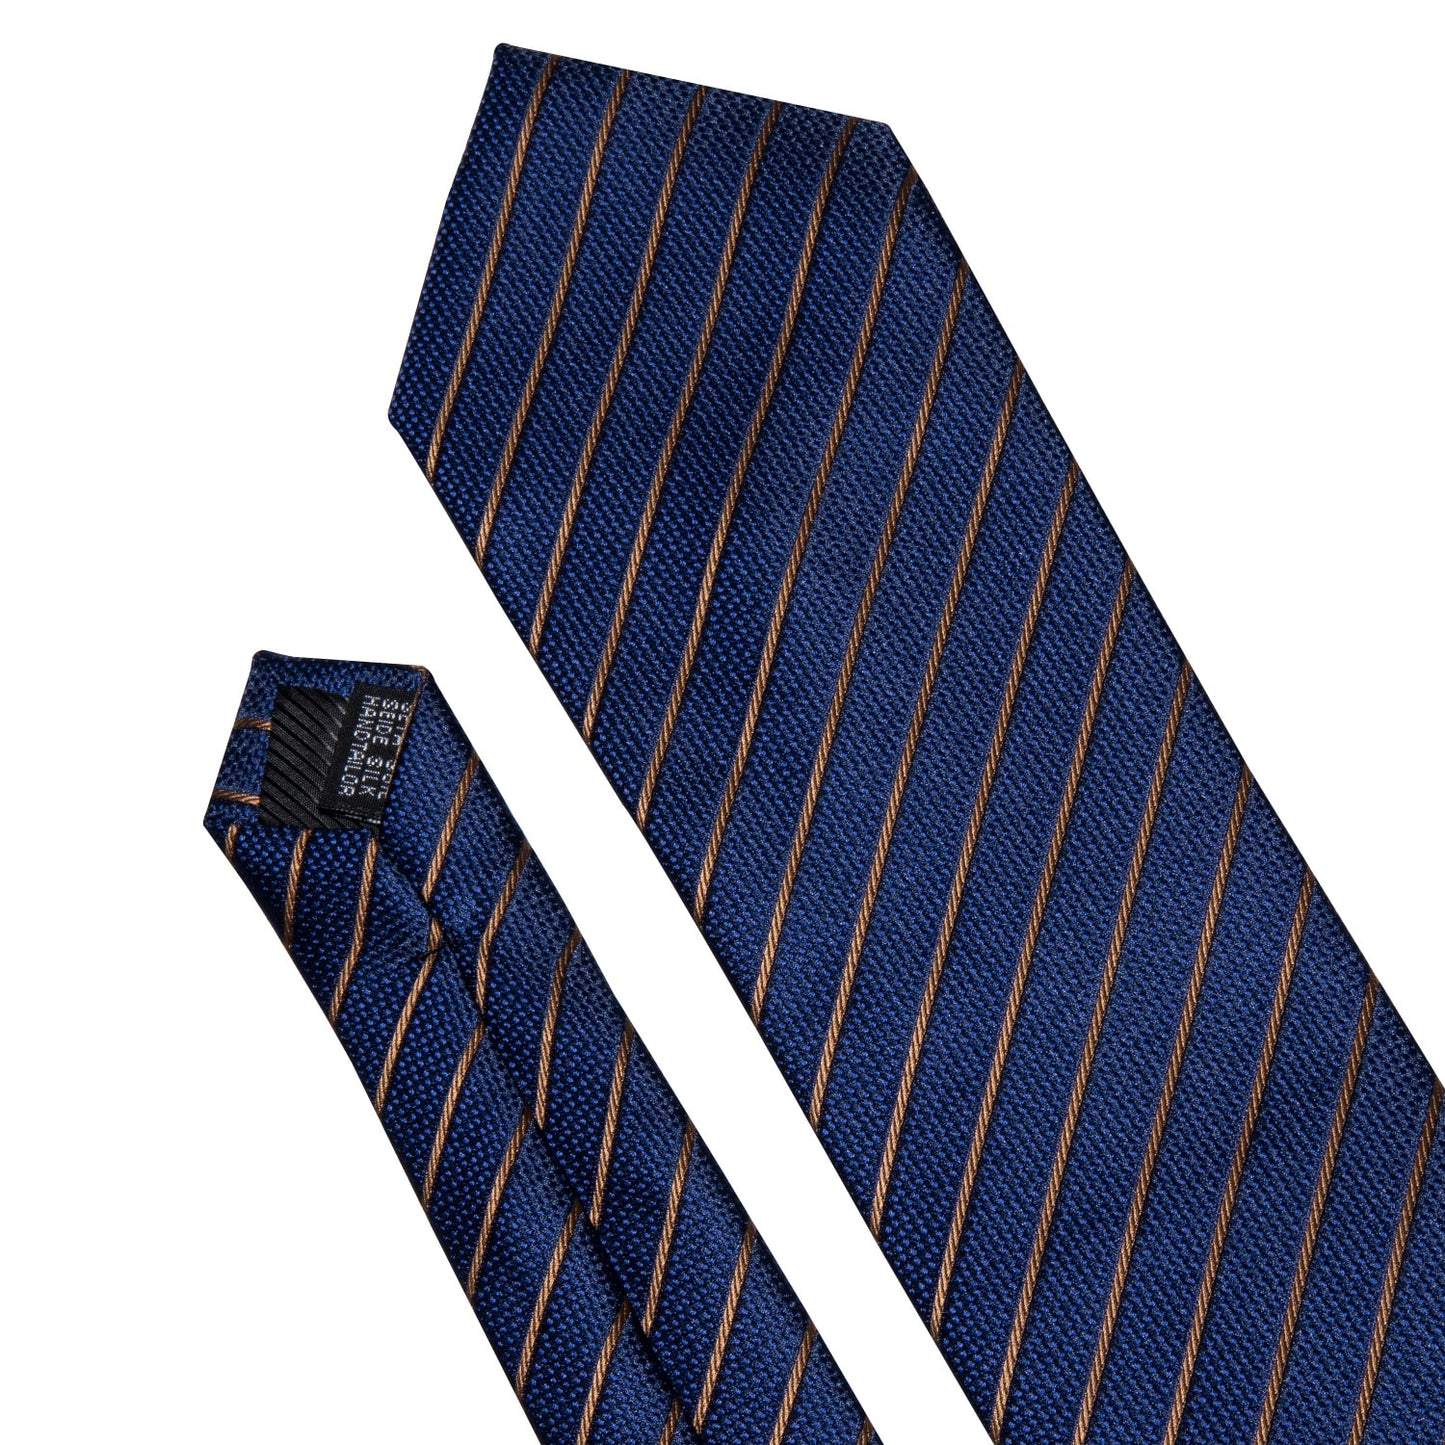 Gold Navy Striped Necktie For Men